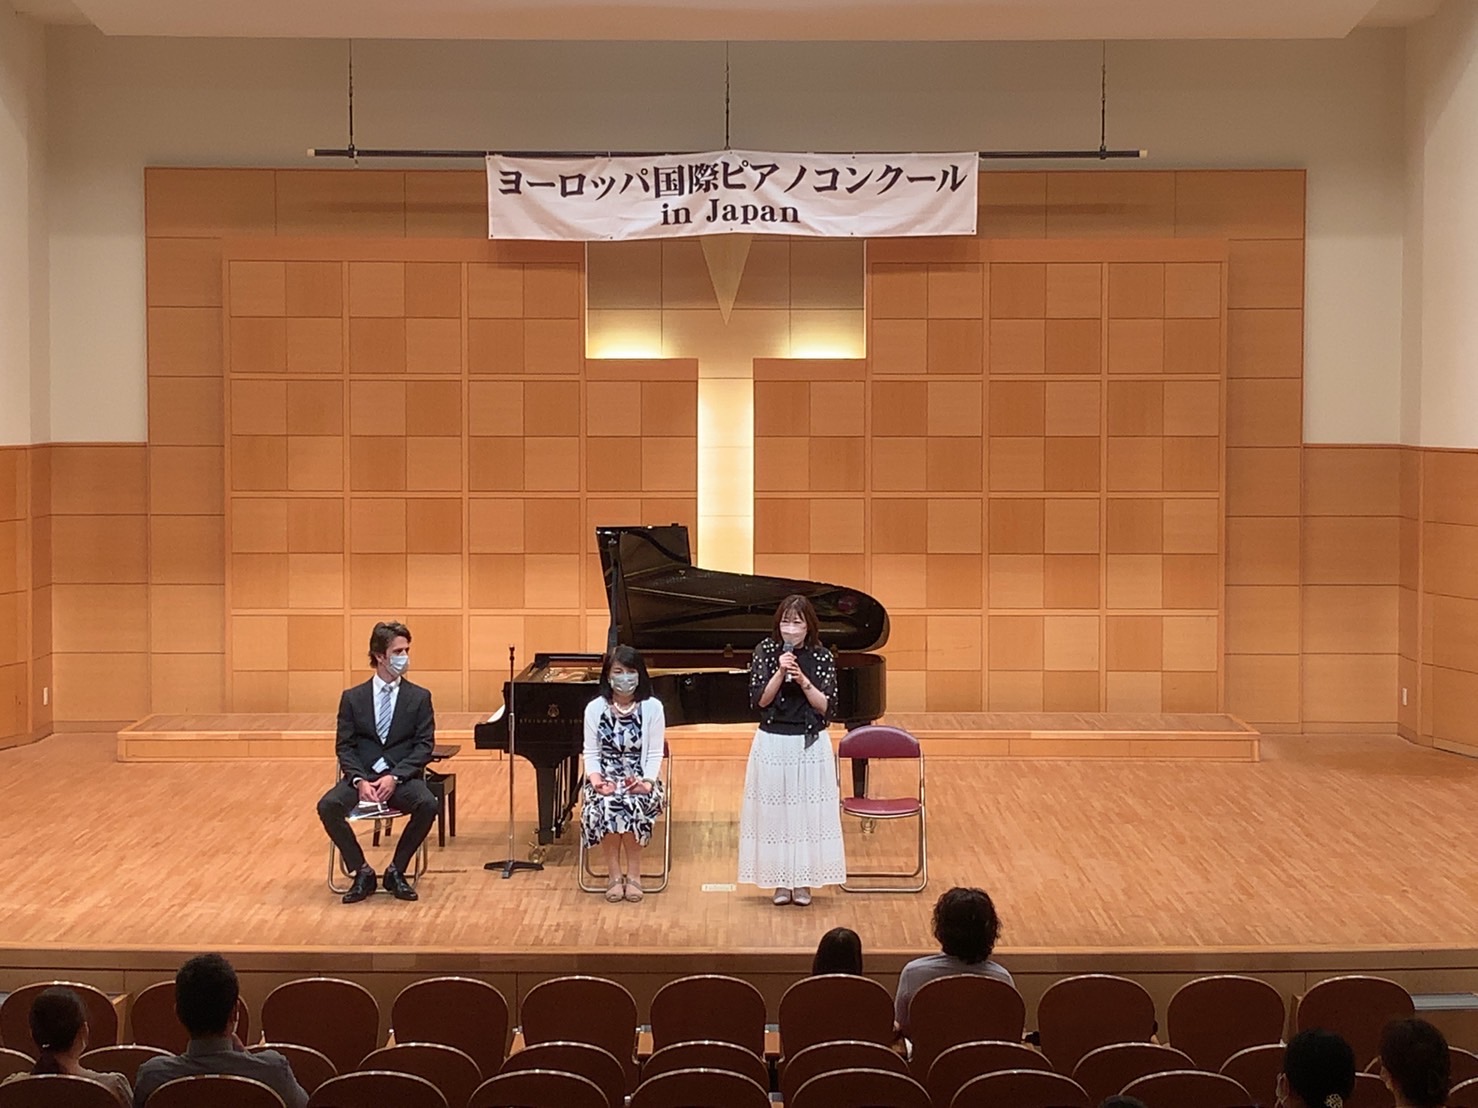 第13回ヨーロッパ国際ピアノコンクール in Japan 仙台地区予選